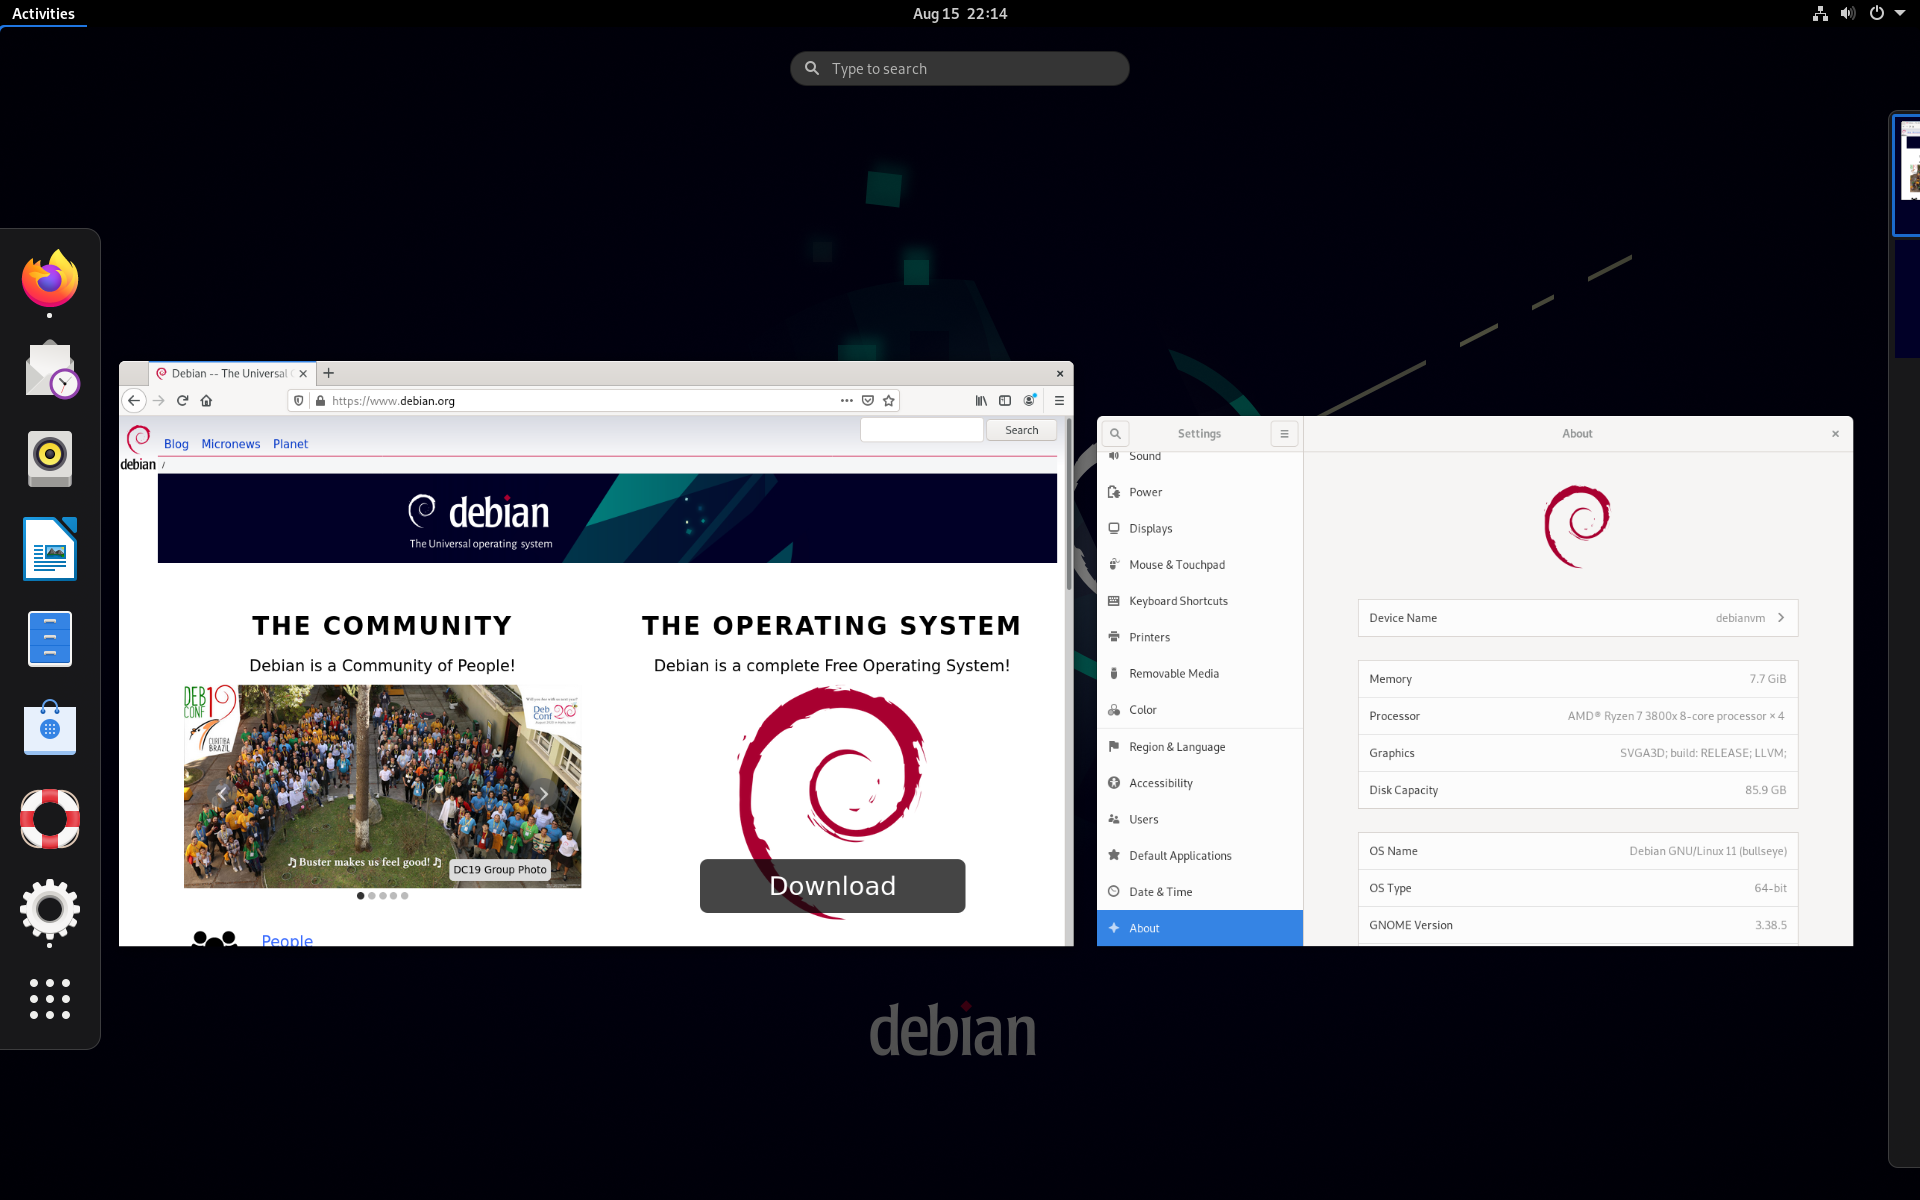 Dự án Debian được bắt đầu từ những năm đầu của thập kỷ 1990